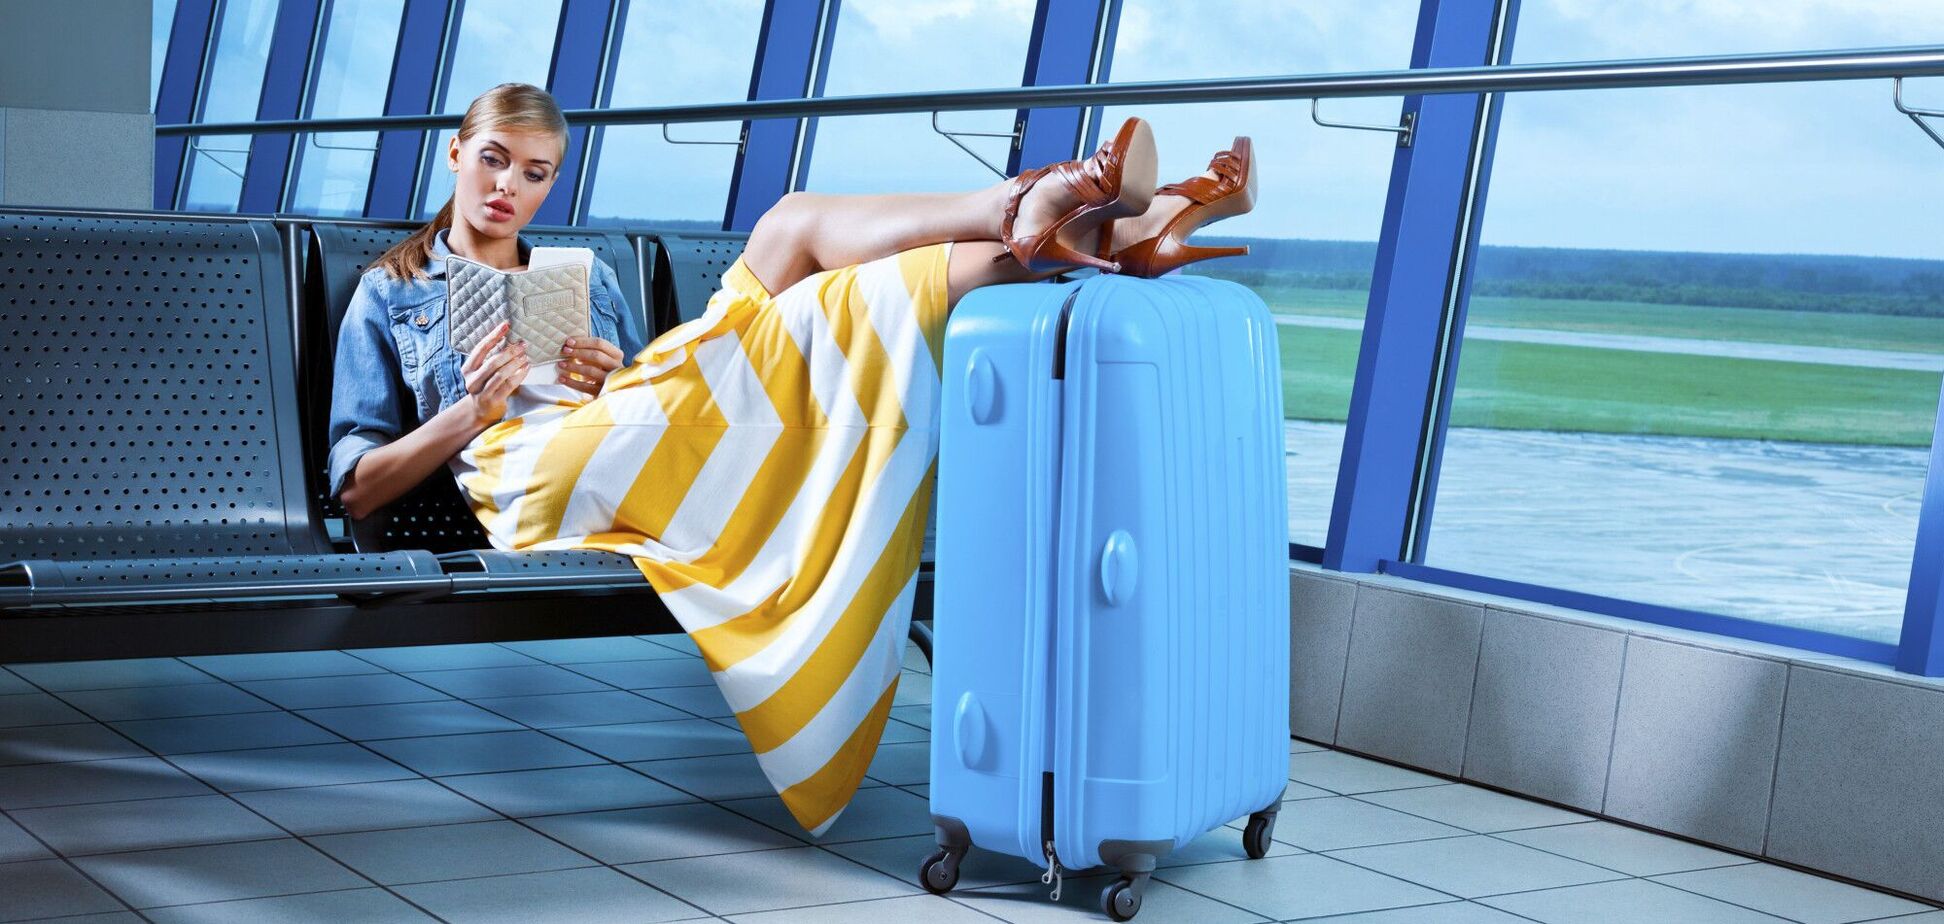 Названо способи убезпечити багаж в аеропорту